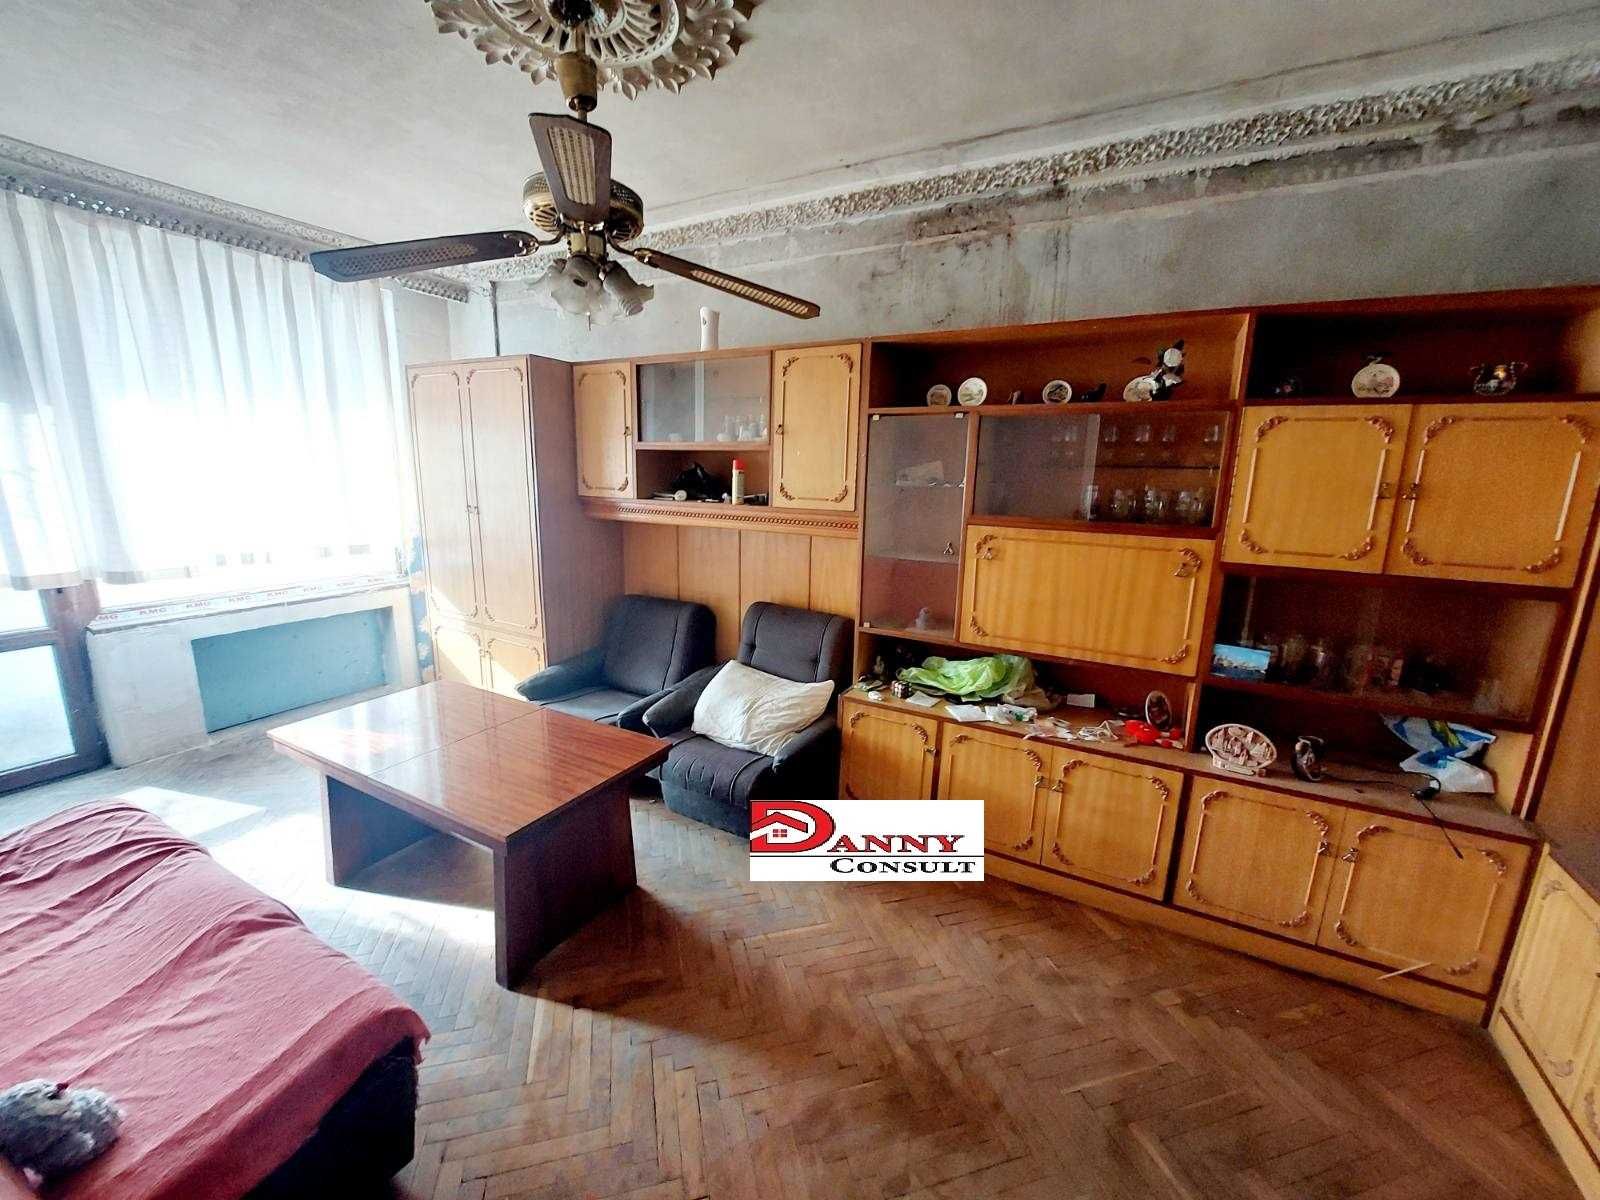 Тристаен апартамент в гр. Велико Търново, района на Спортна зала